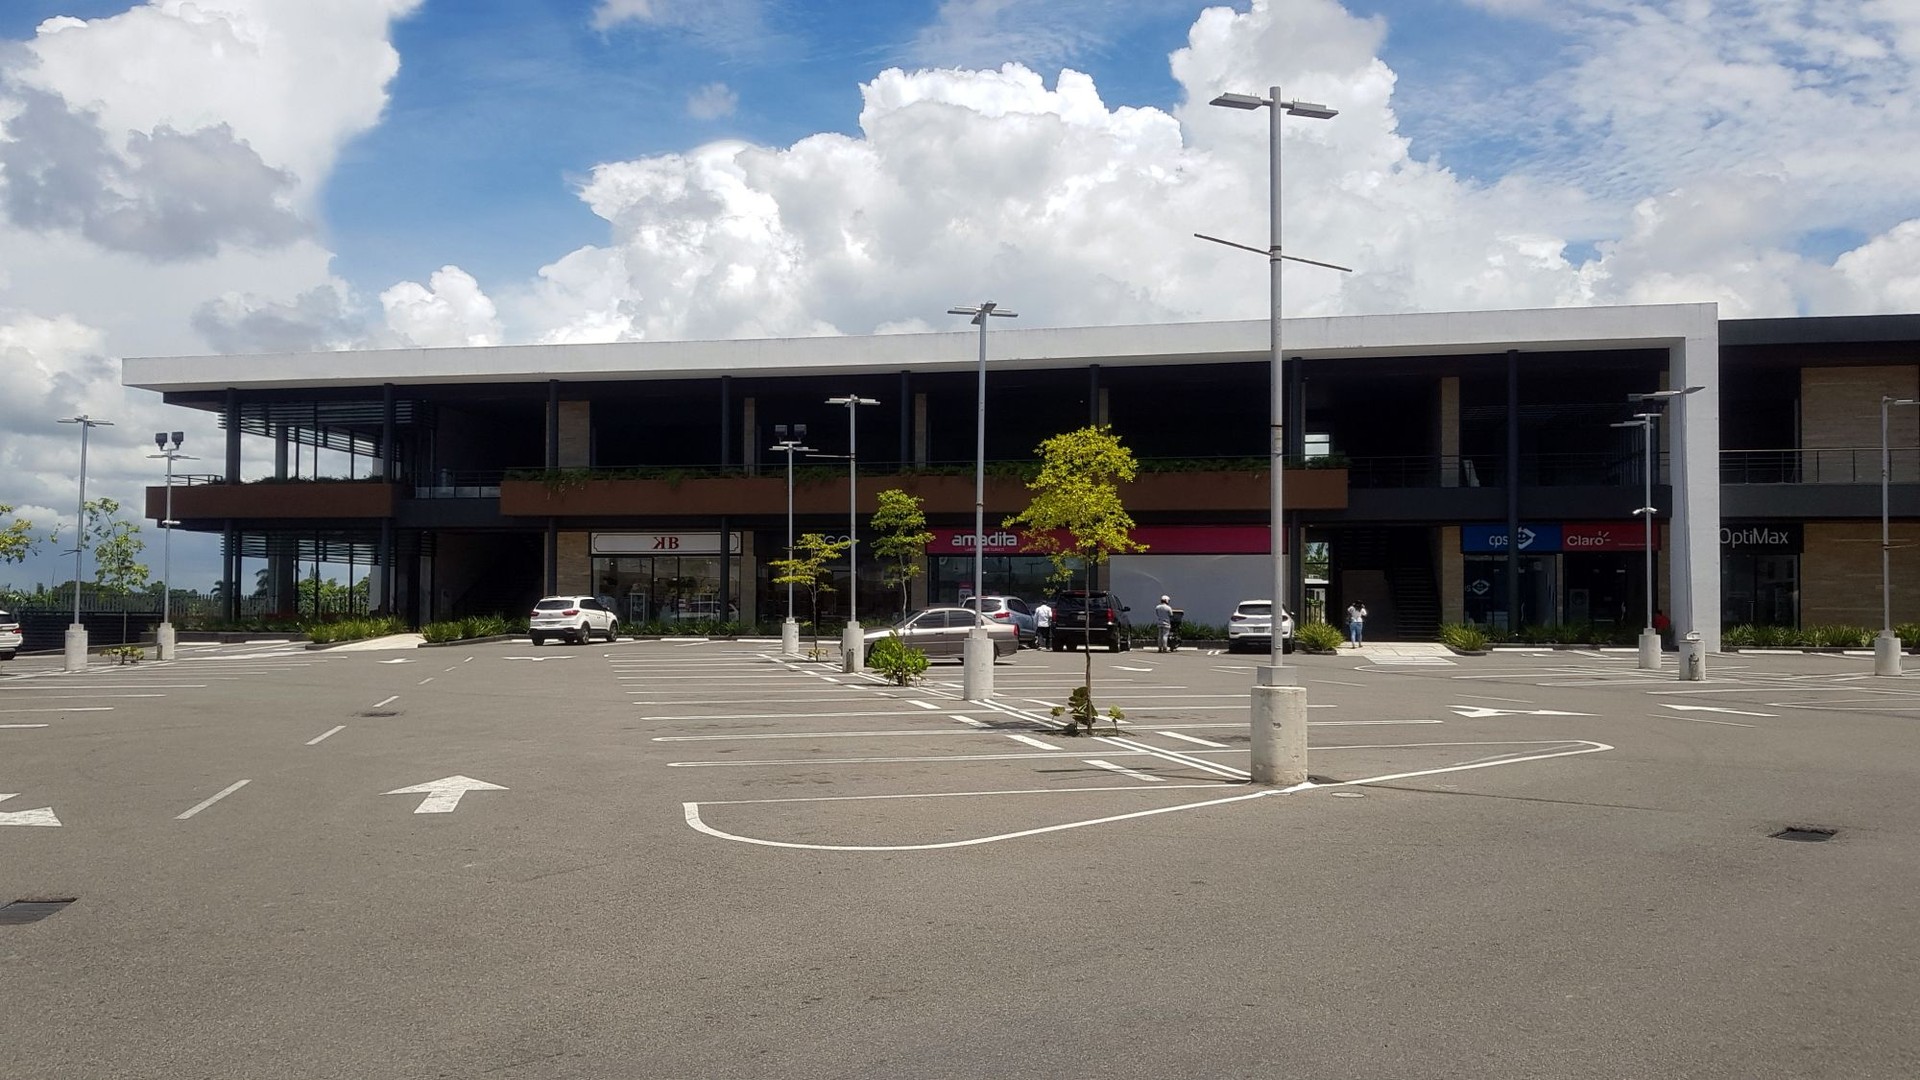 oficinas y locales comerciales - Los Rios local comercial plaza comercial cerca de Intec 2do nivel 6